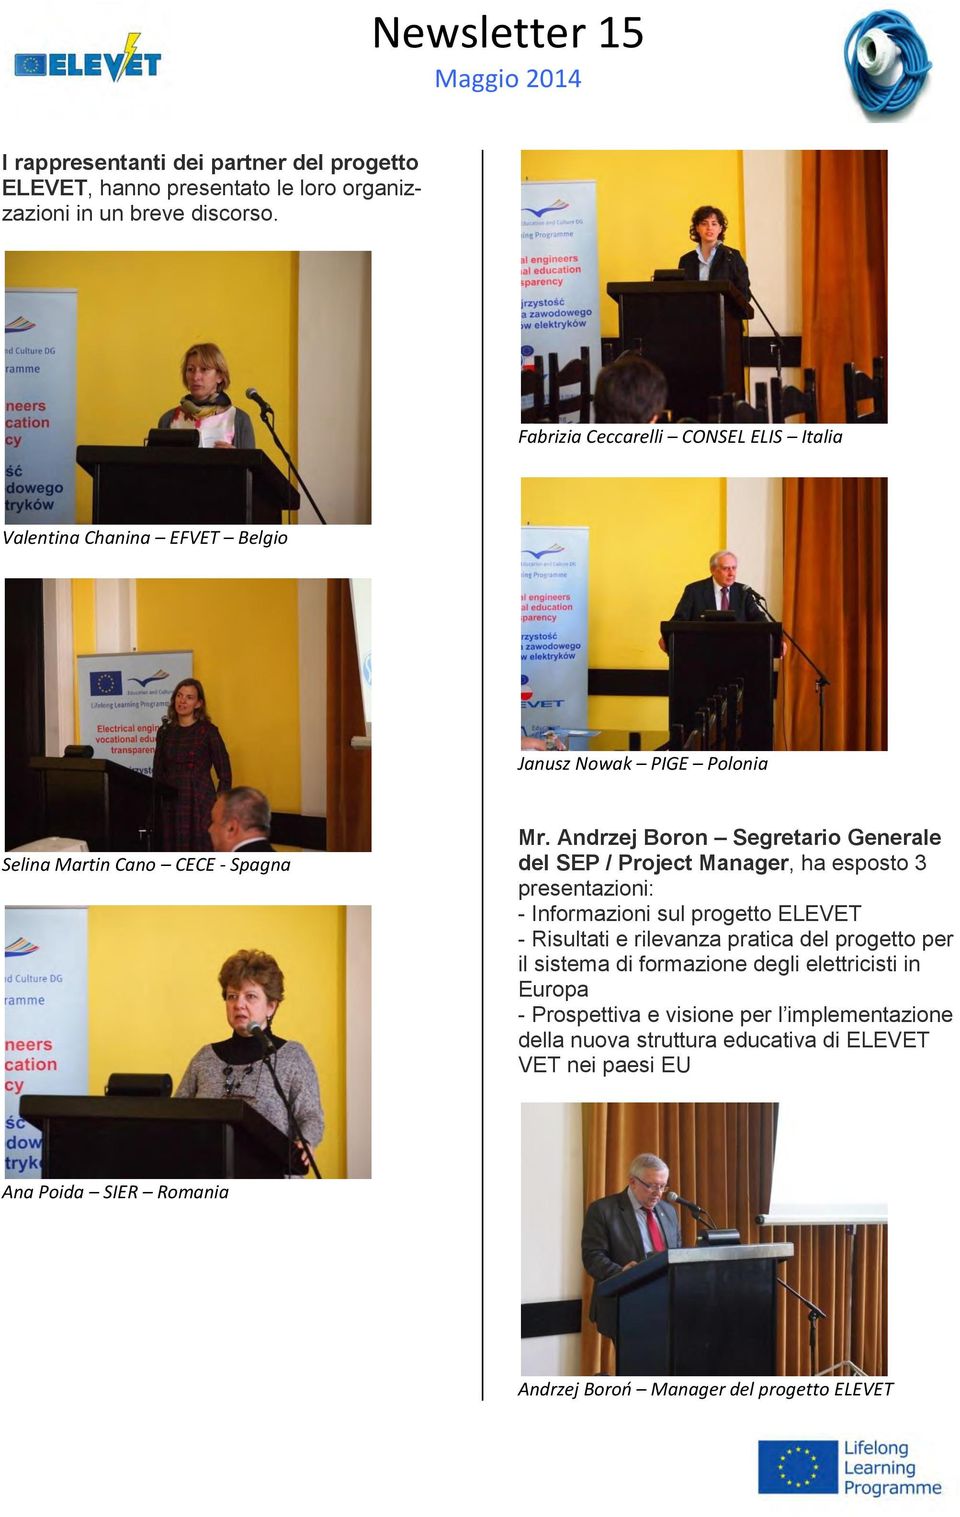 Andrzej Boron Segretario Generale del SEP / Project Manager, ha esposto 3 presentazioni: - Informazioni sul progetto ELEVET - Risultati e rilevanza pratica del